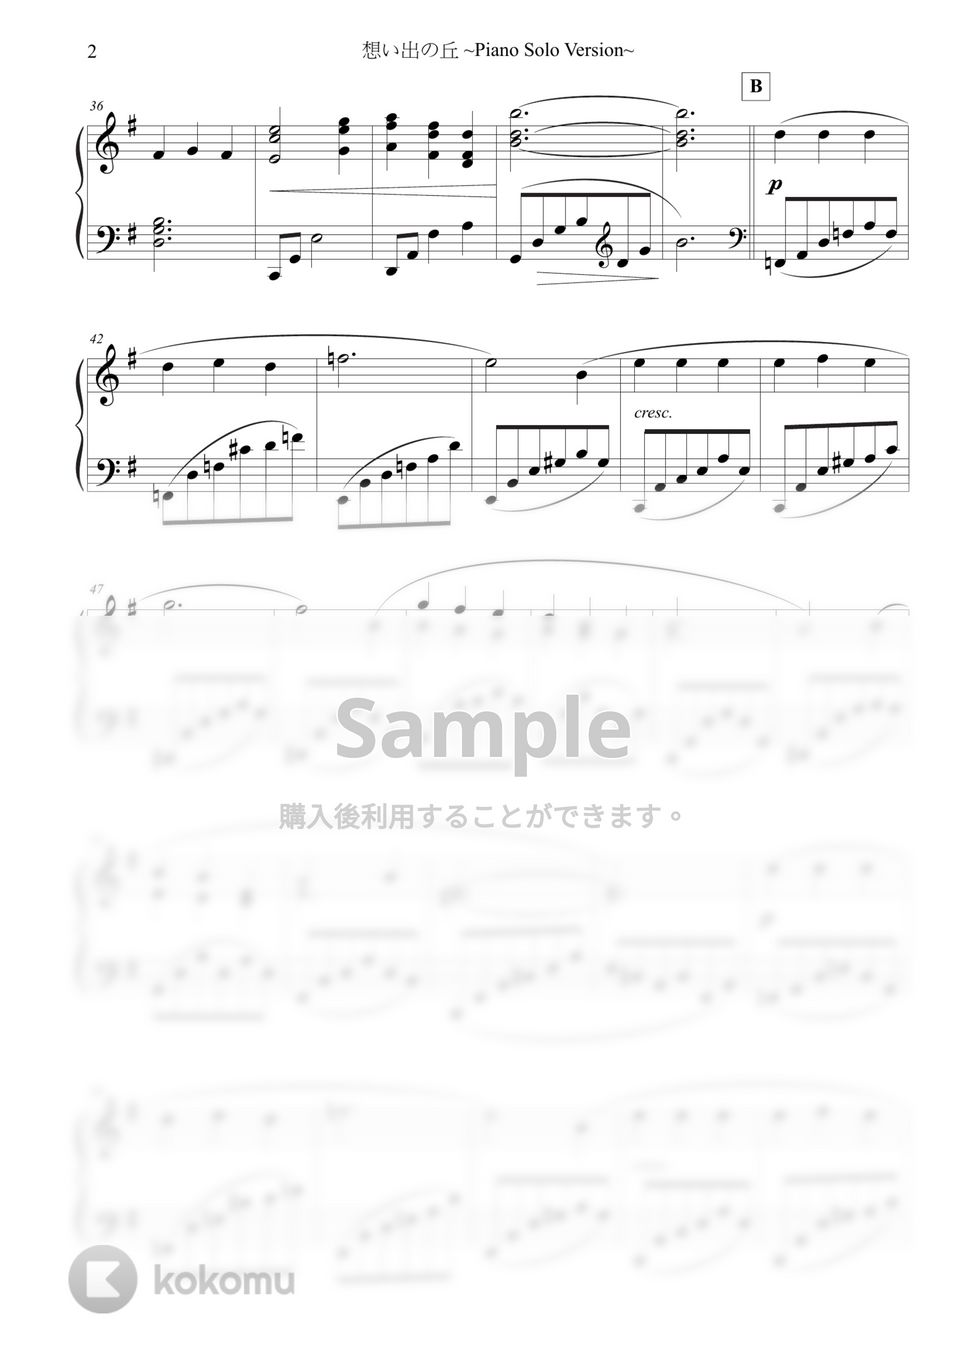 服部隆之 - 想い出の丘 ~Piano Solo Version~ (原典版) by 楊思緯